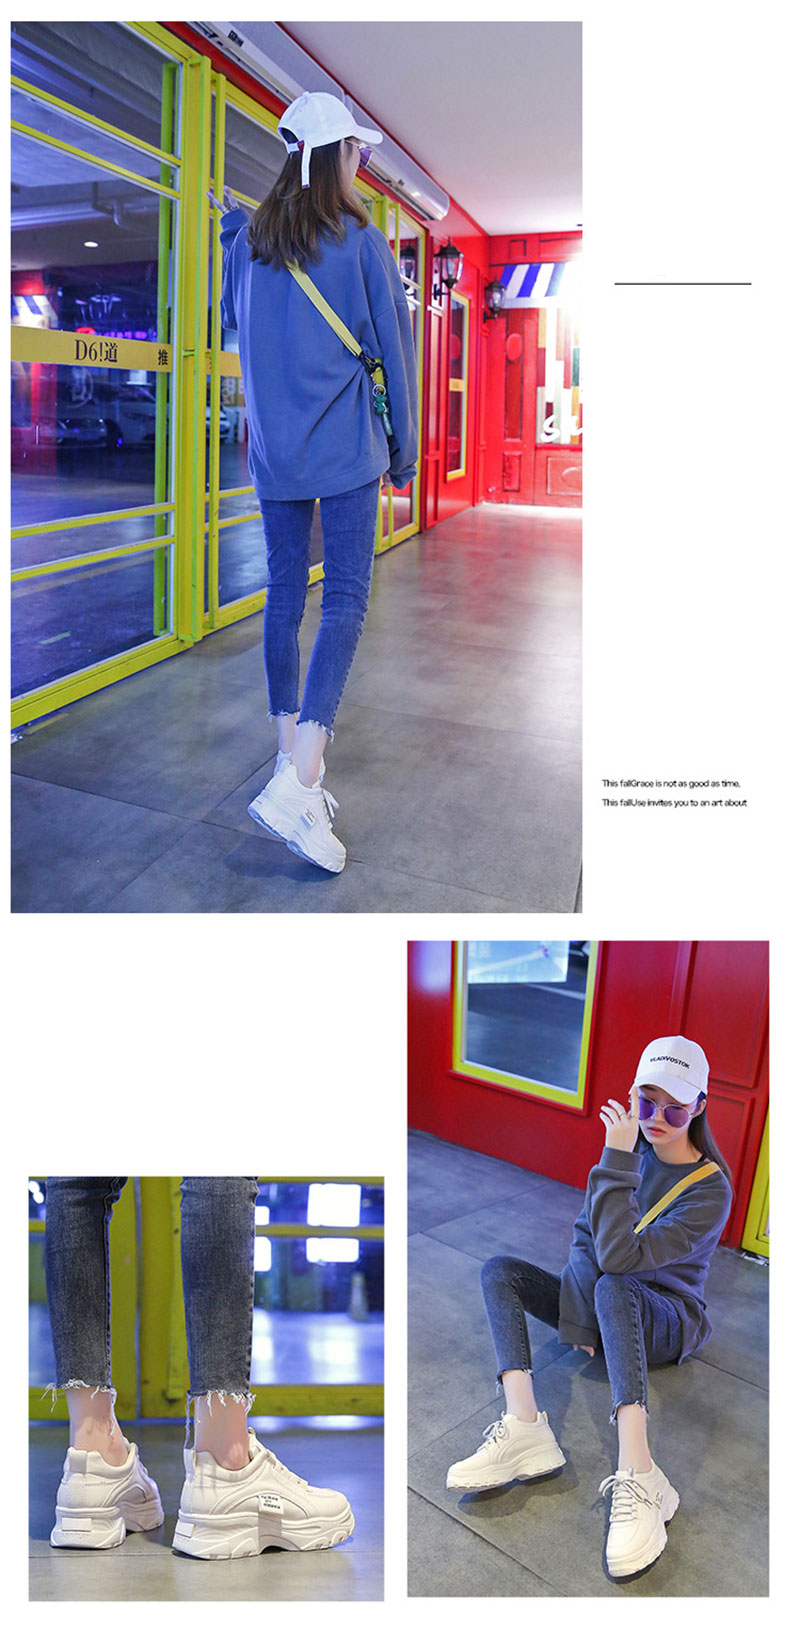 ข้อมูลเกี่ยวกับ YUNGUANG sneakers hit version in INS shoes Korean style sports shoes fashion women sneakers thick heel Col ัปเ flax made from ผ้าตา pw breathable well sneakers ผญ [high qy]